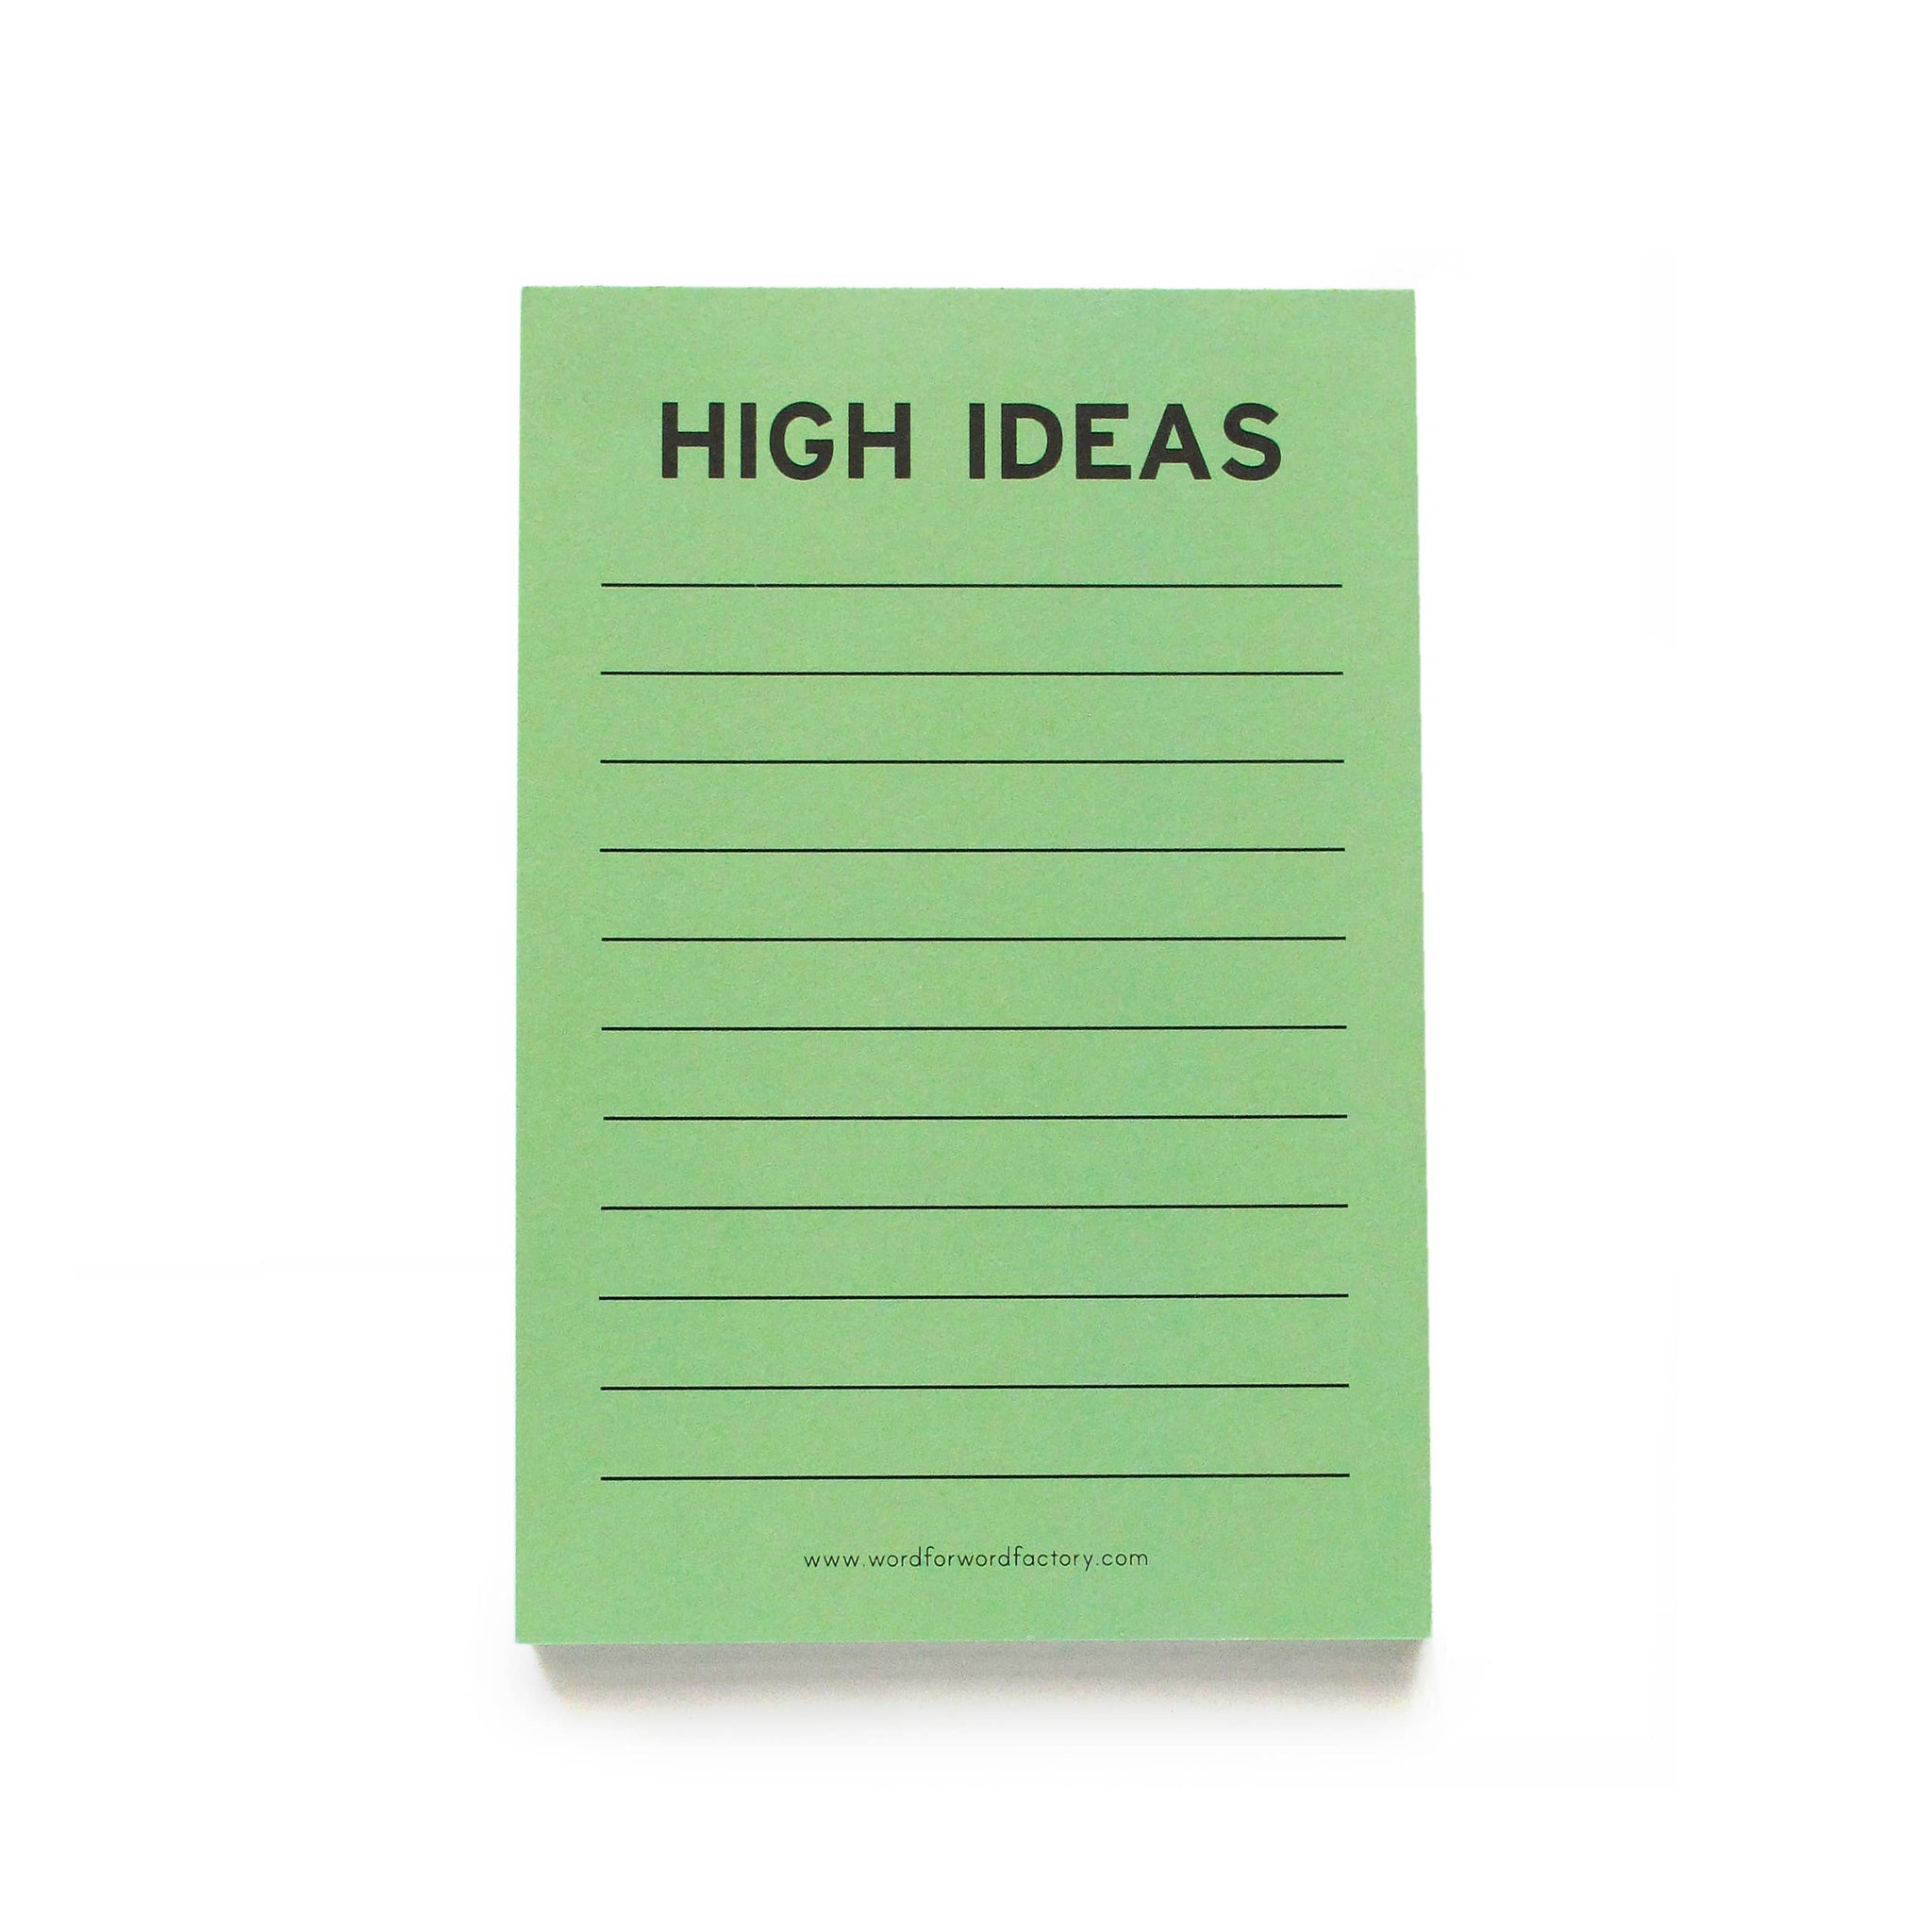 HIGH IDEAS - Notepads cannabis themed mint green notepad